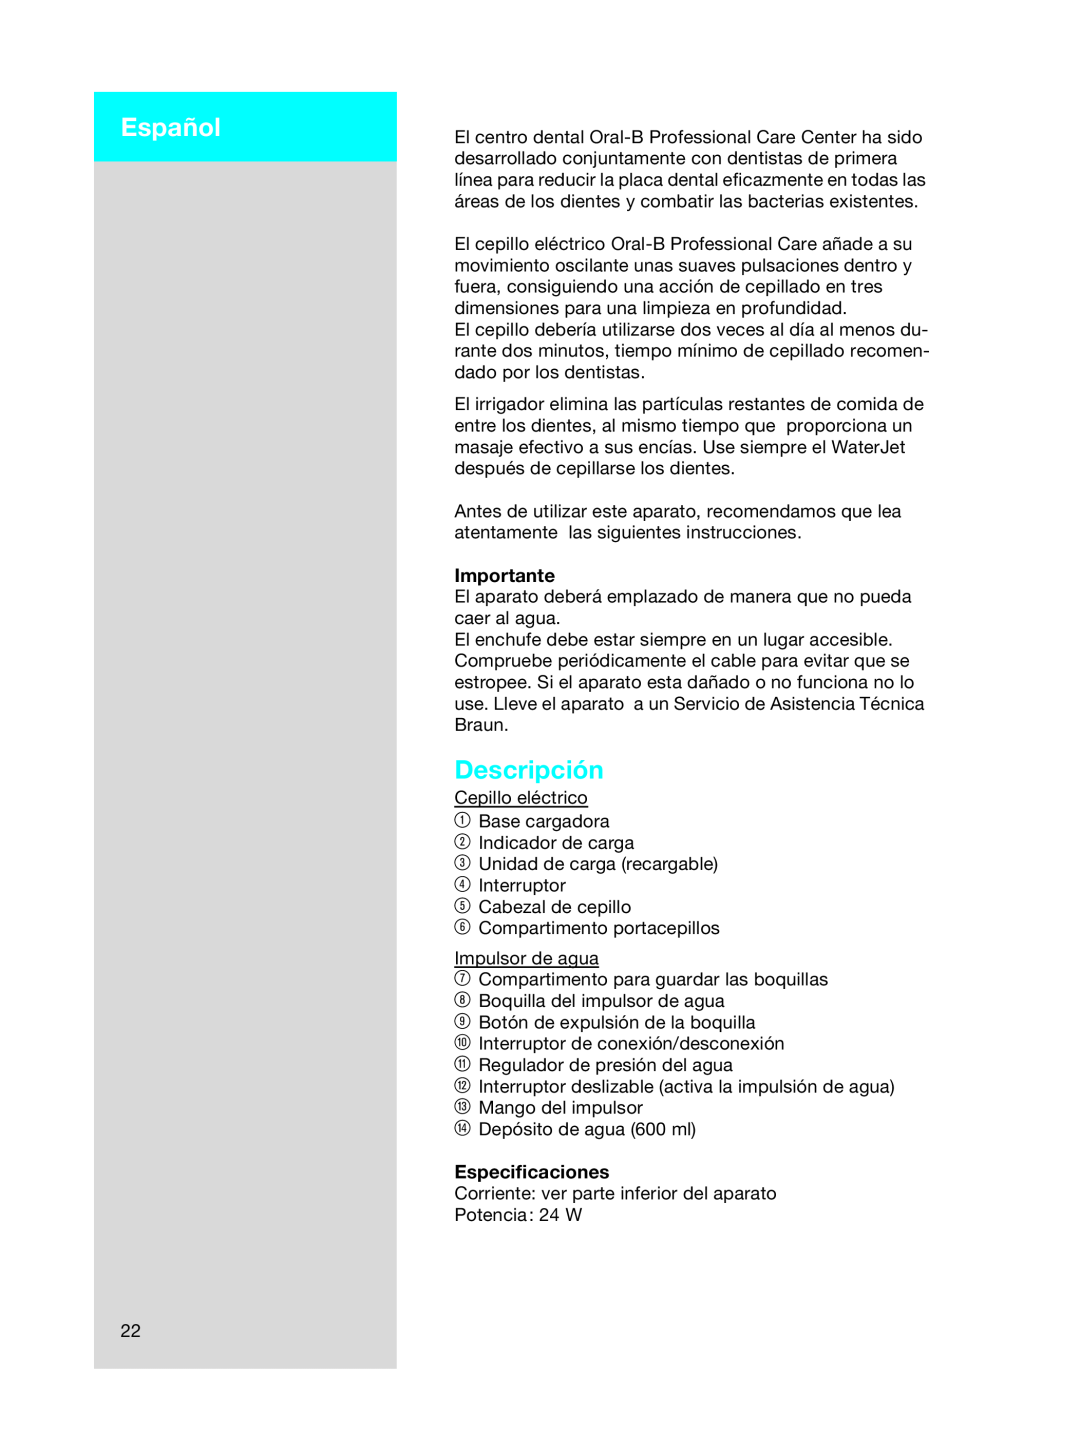 Braun OC15525 A, 3718 manual Español, Descripción, Importante, Especiﬁcaciones 